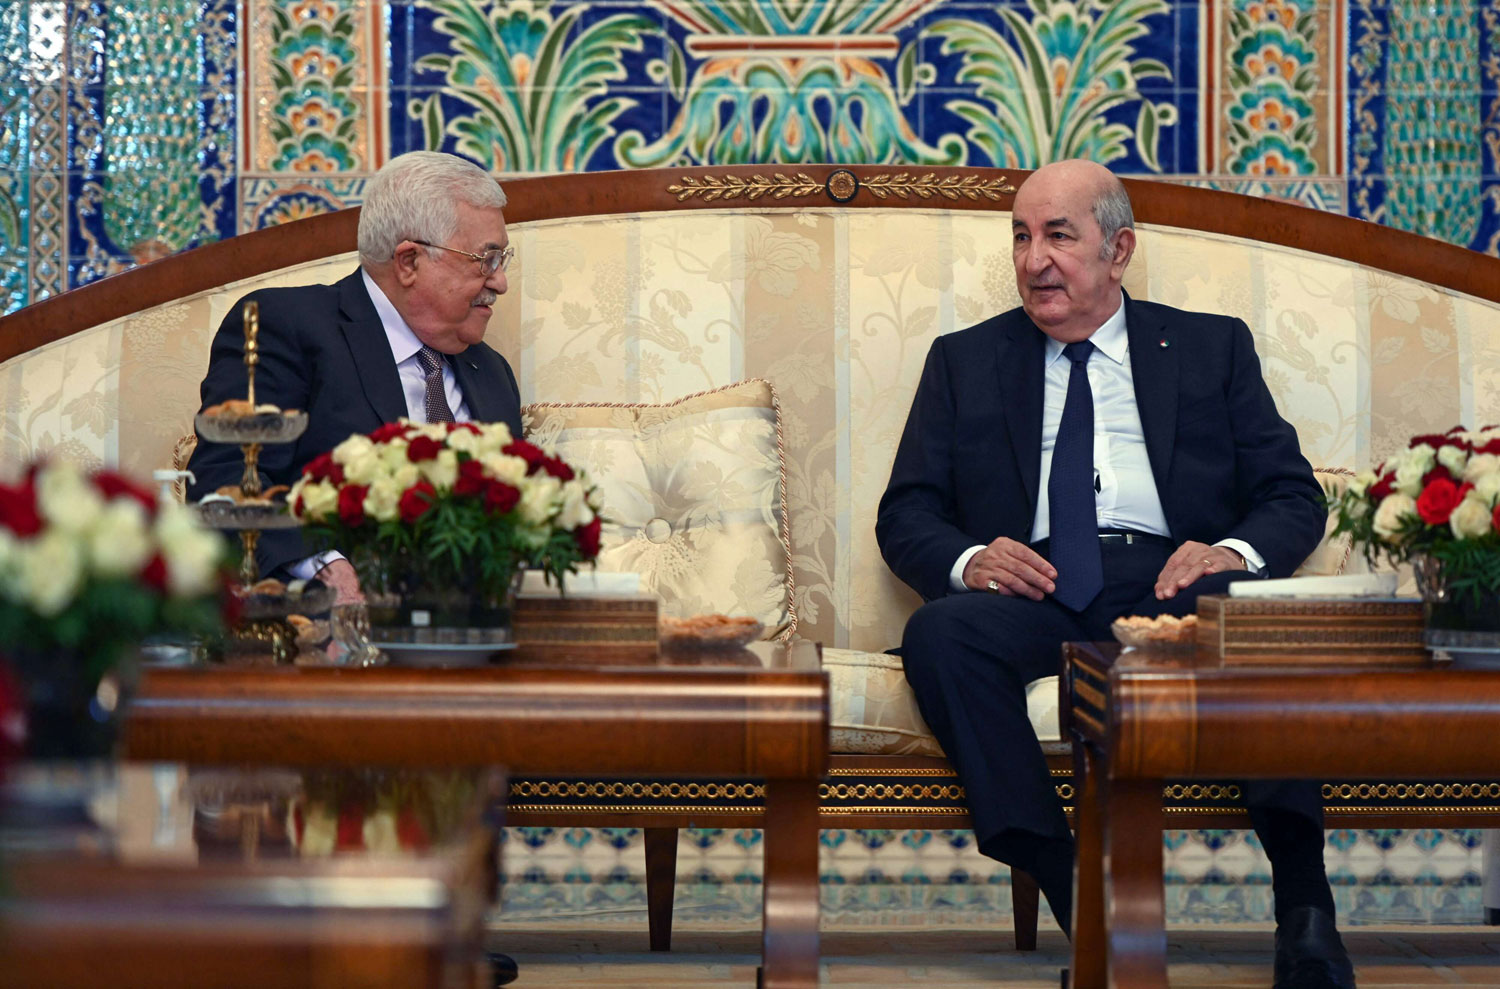 الدعوة الجزائر لعقد لقاء مصالحة بين الفصائل الفلسطينية: الدوافع والتحديات